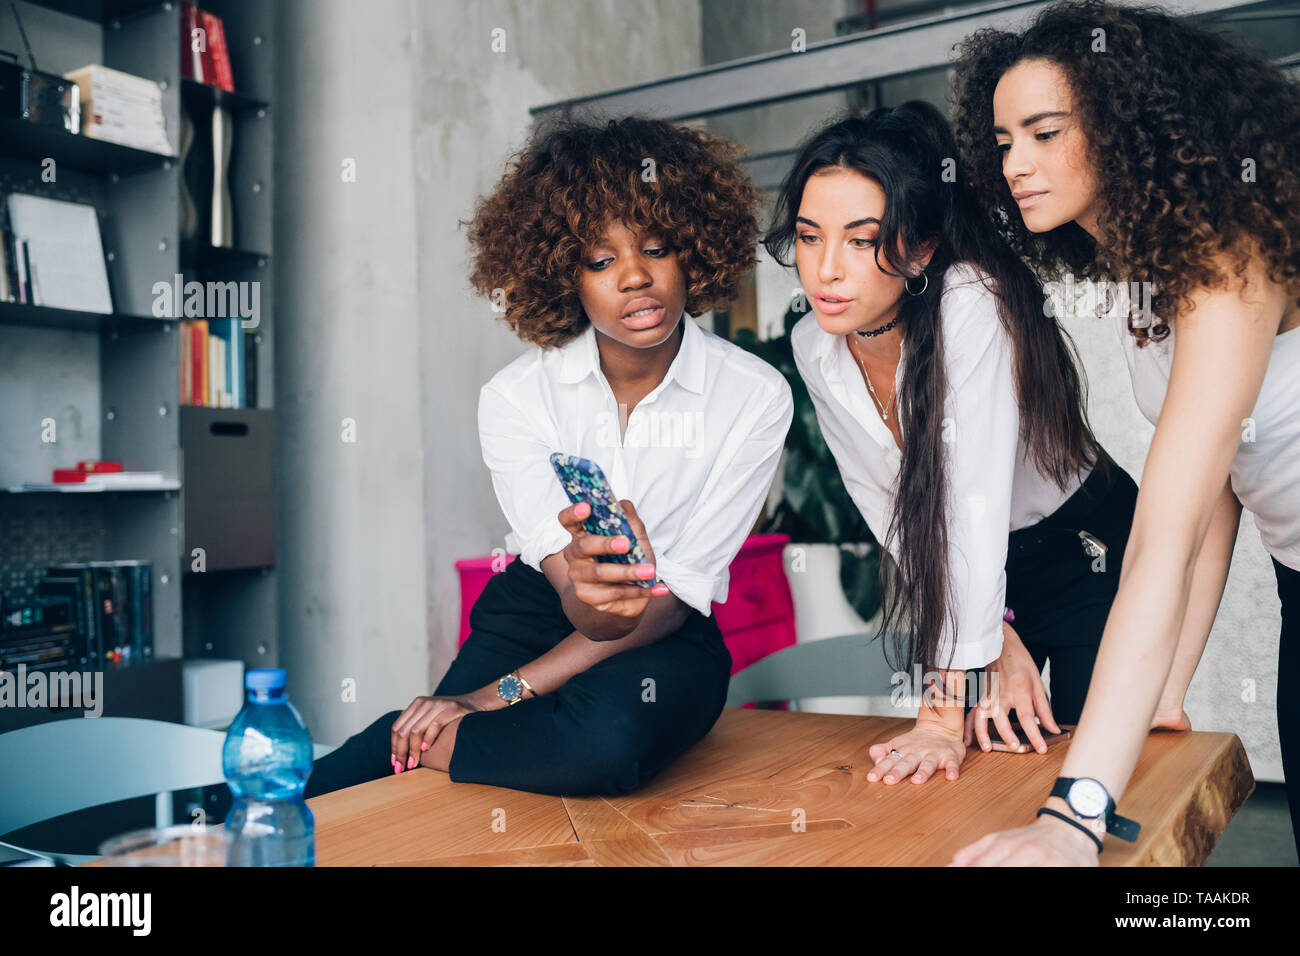 Tres mujeres jóvenes multirracial mirando el smartphone en la moderna oficina coworking - compañerismo, interacción, reserva Foto de stock